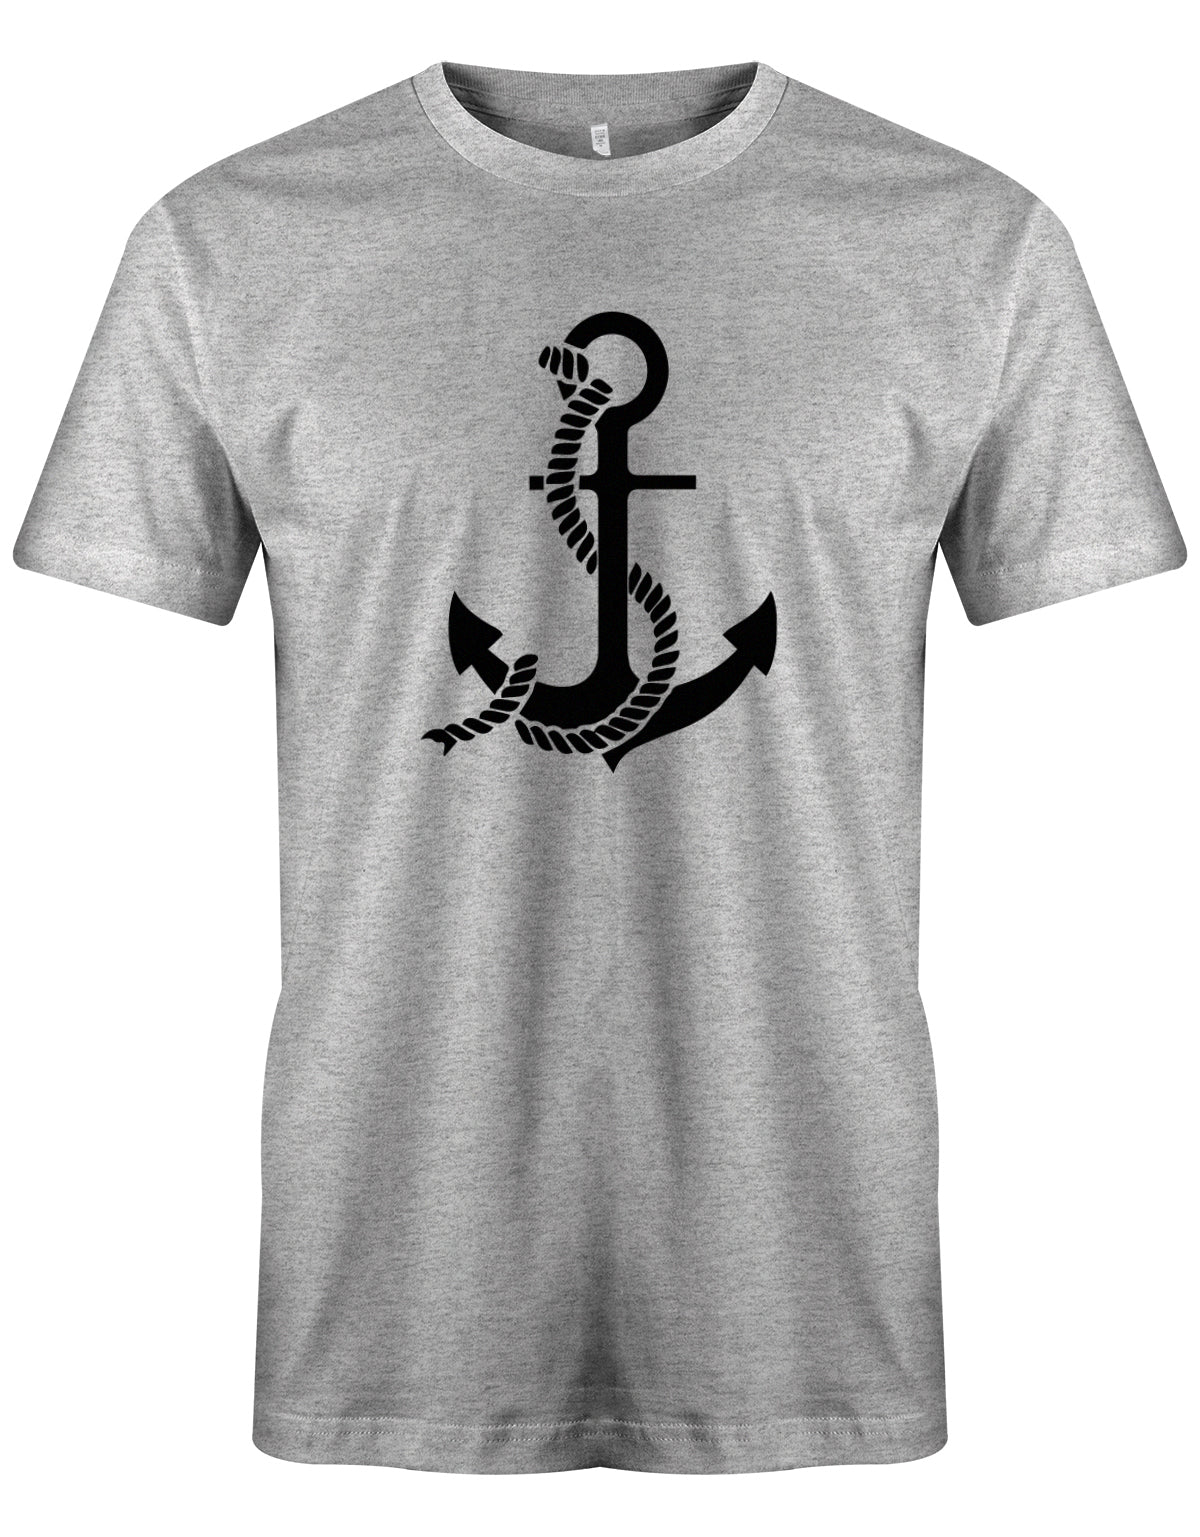 Das Segler t-shirt bedruckt mit "Anker und Tau für alle Seeleute". Grau